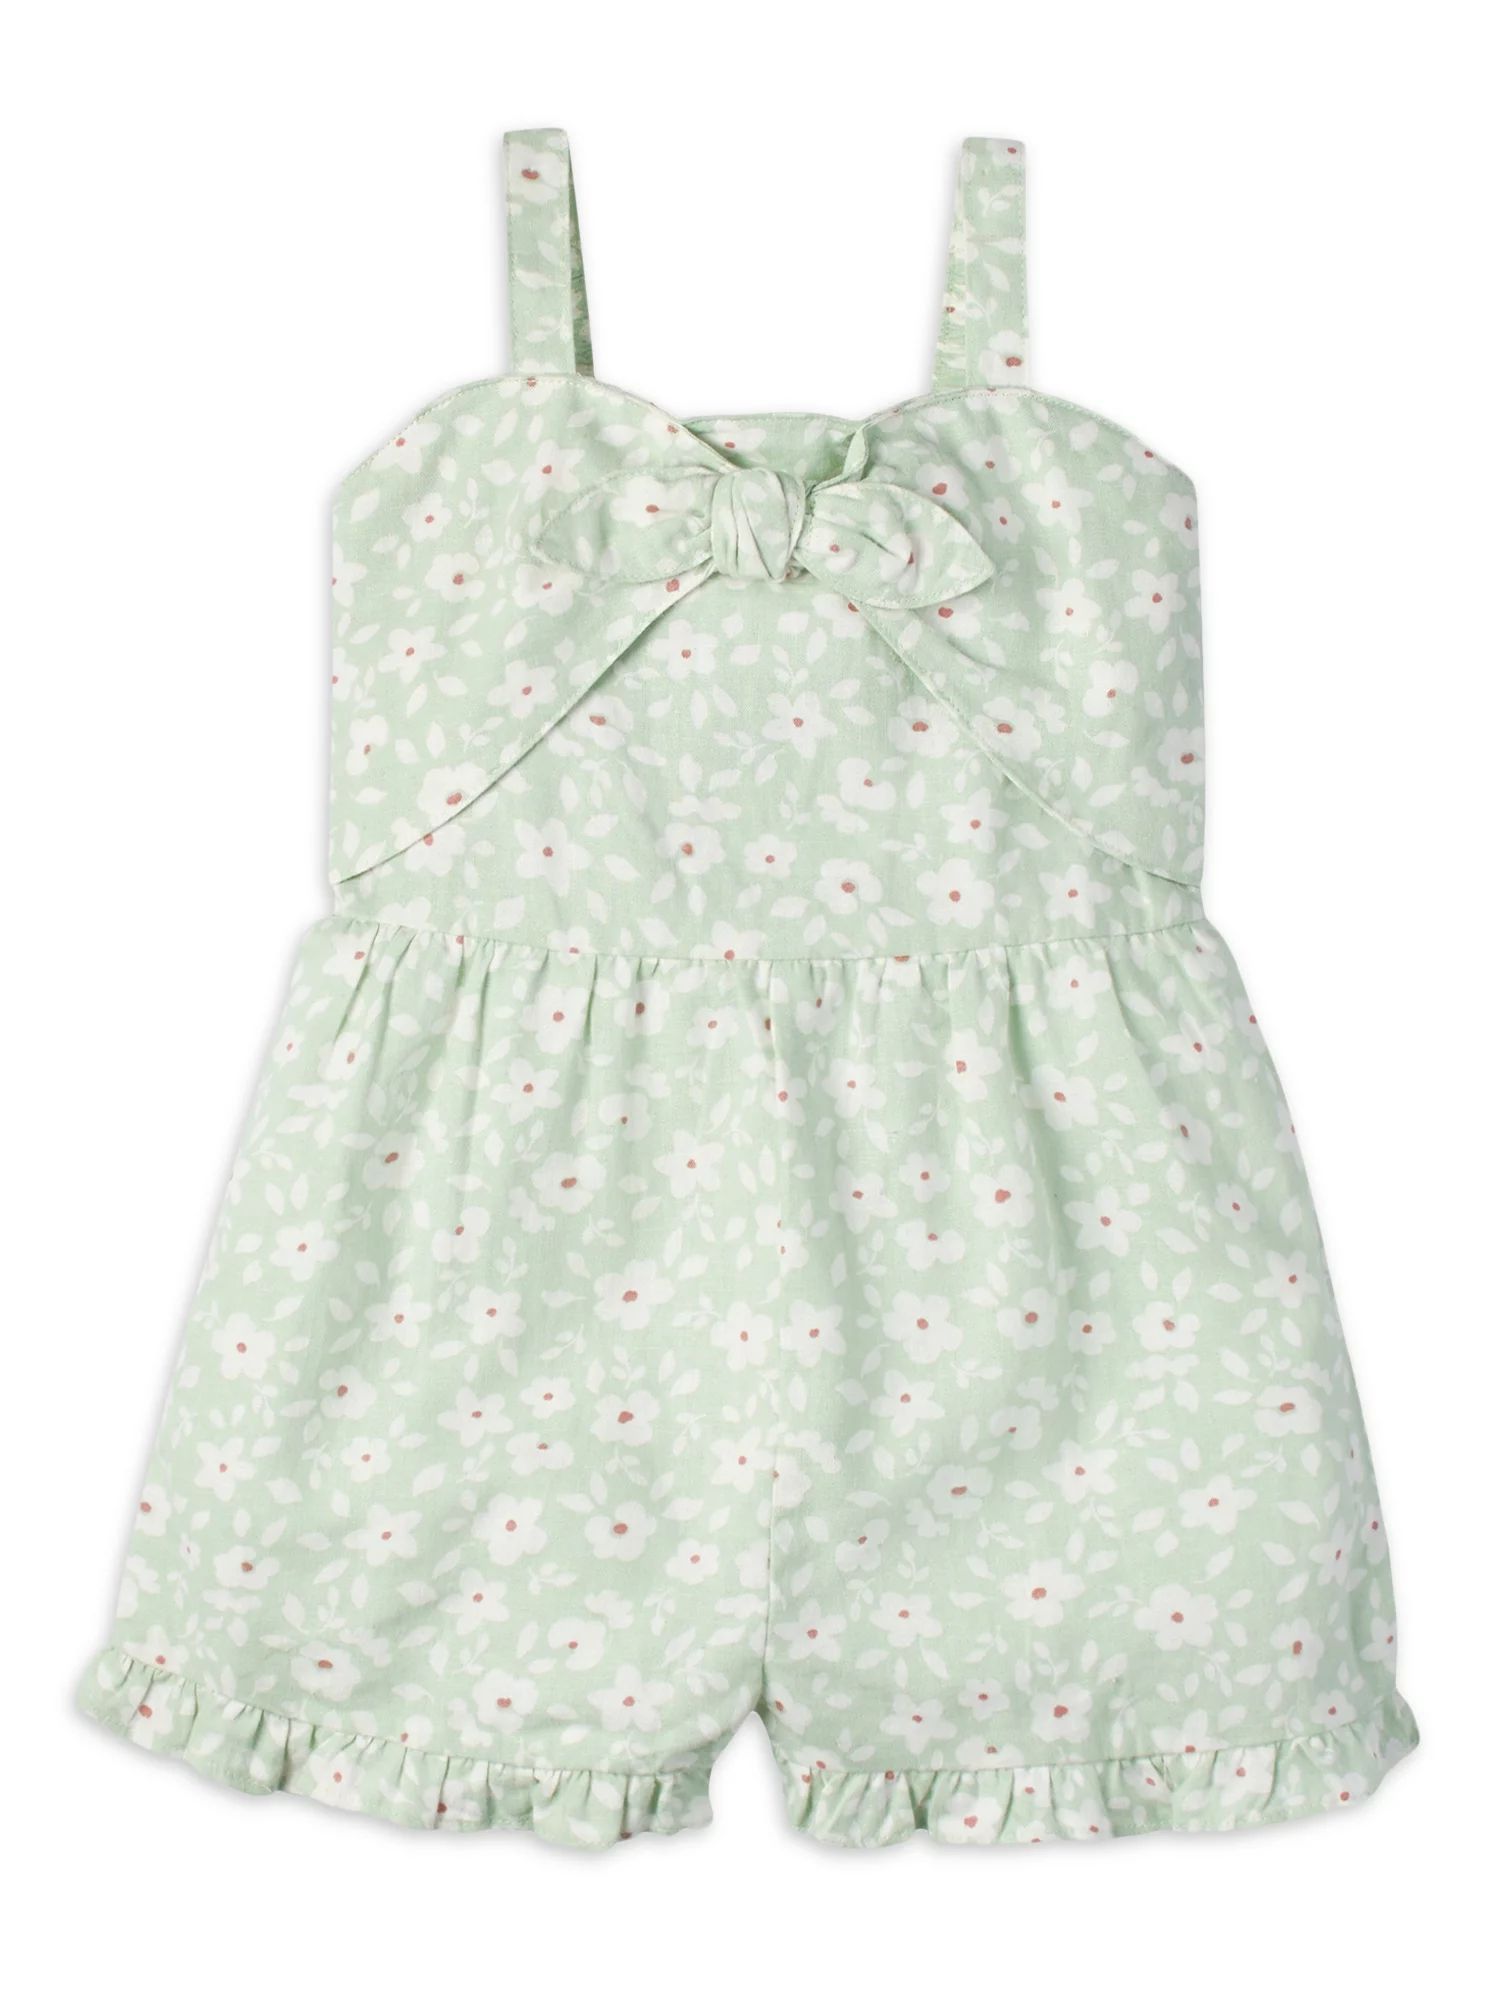 Toddler Girls (12M-5T) Clothing | Walmart (US)